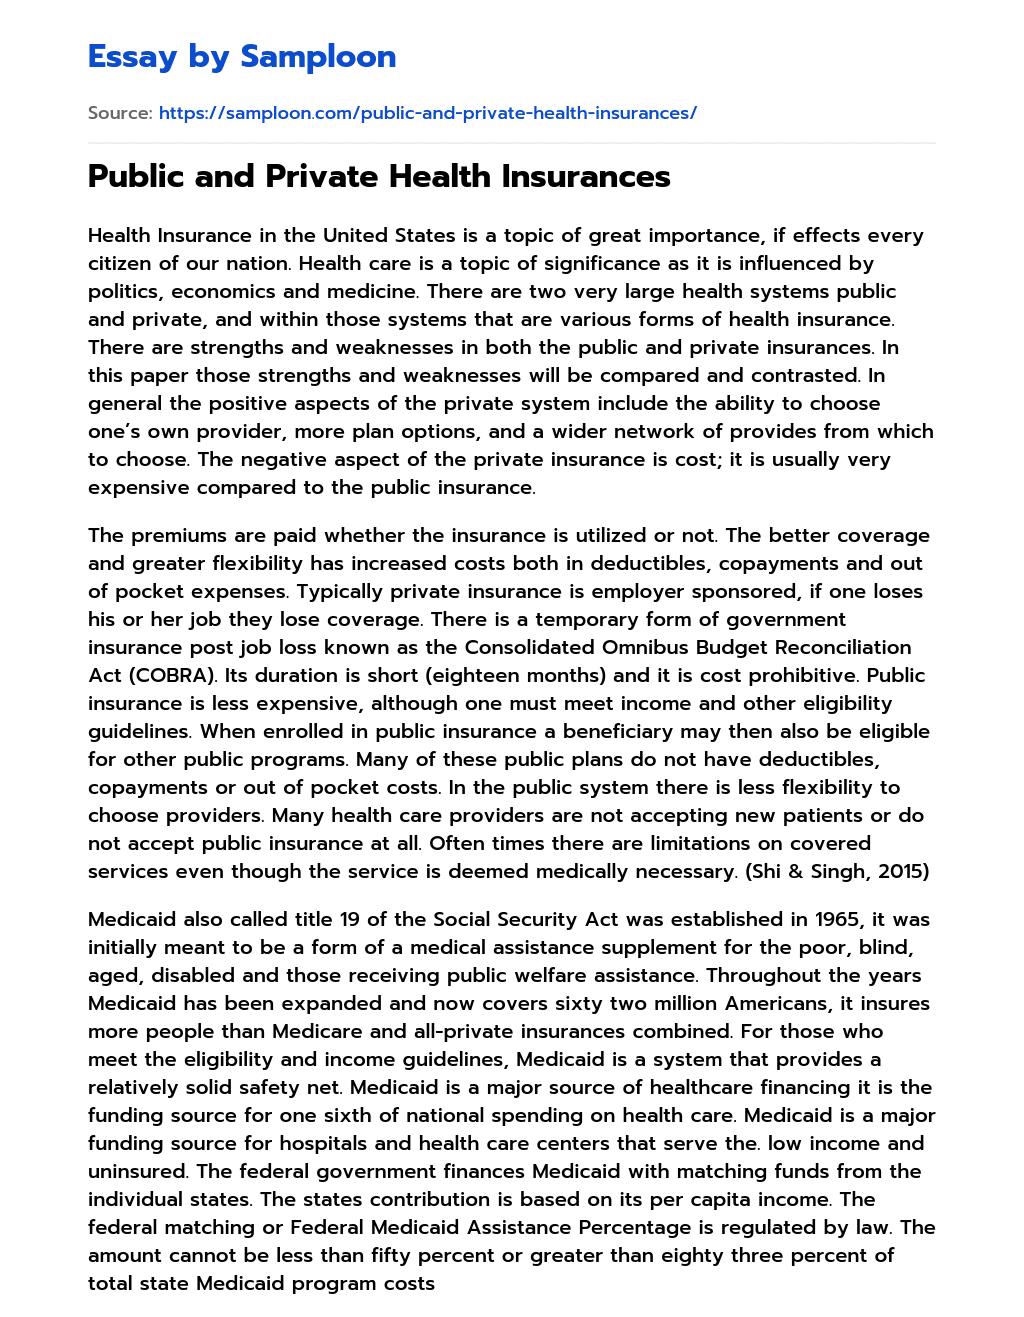 Public and Private Health Insurances essay